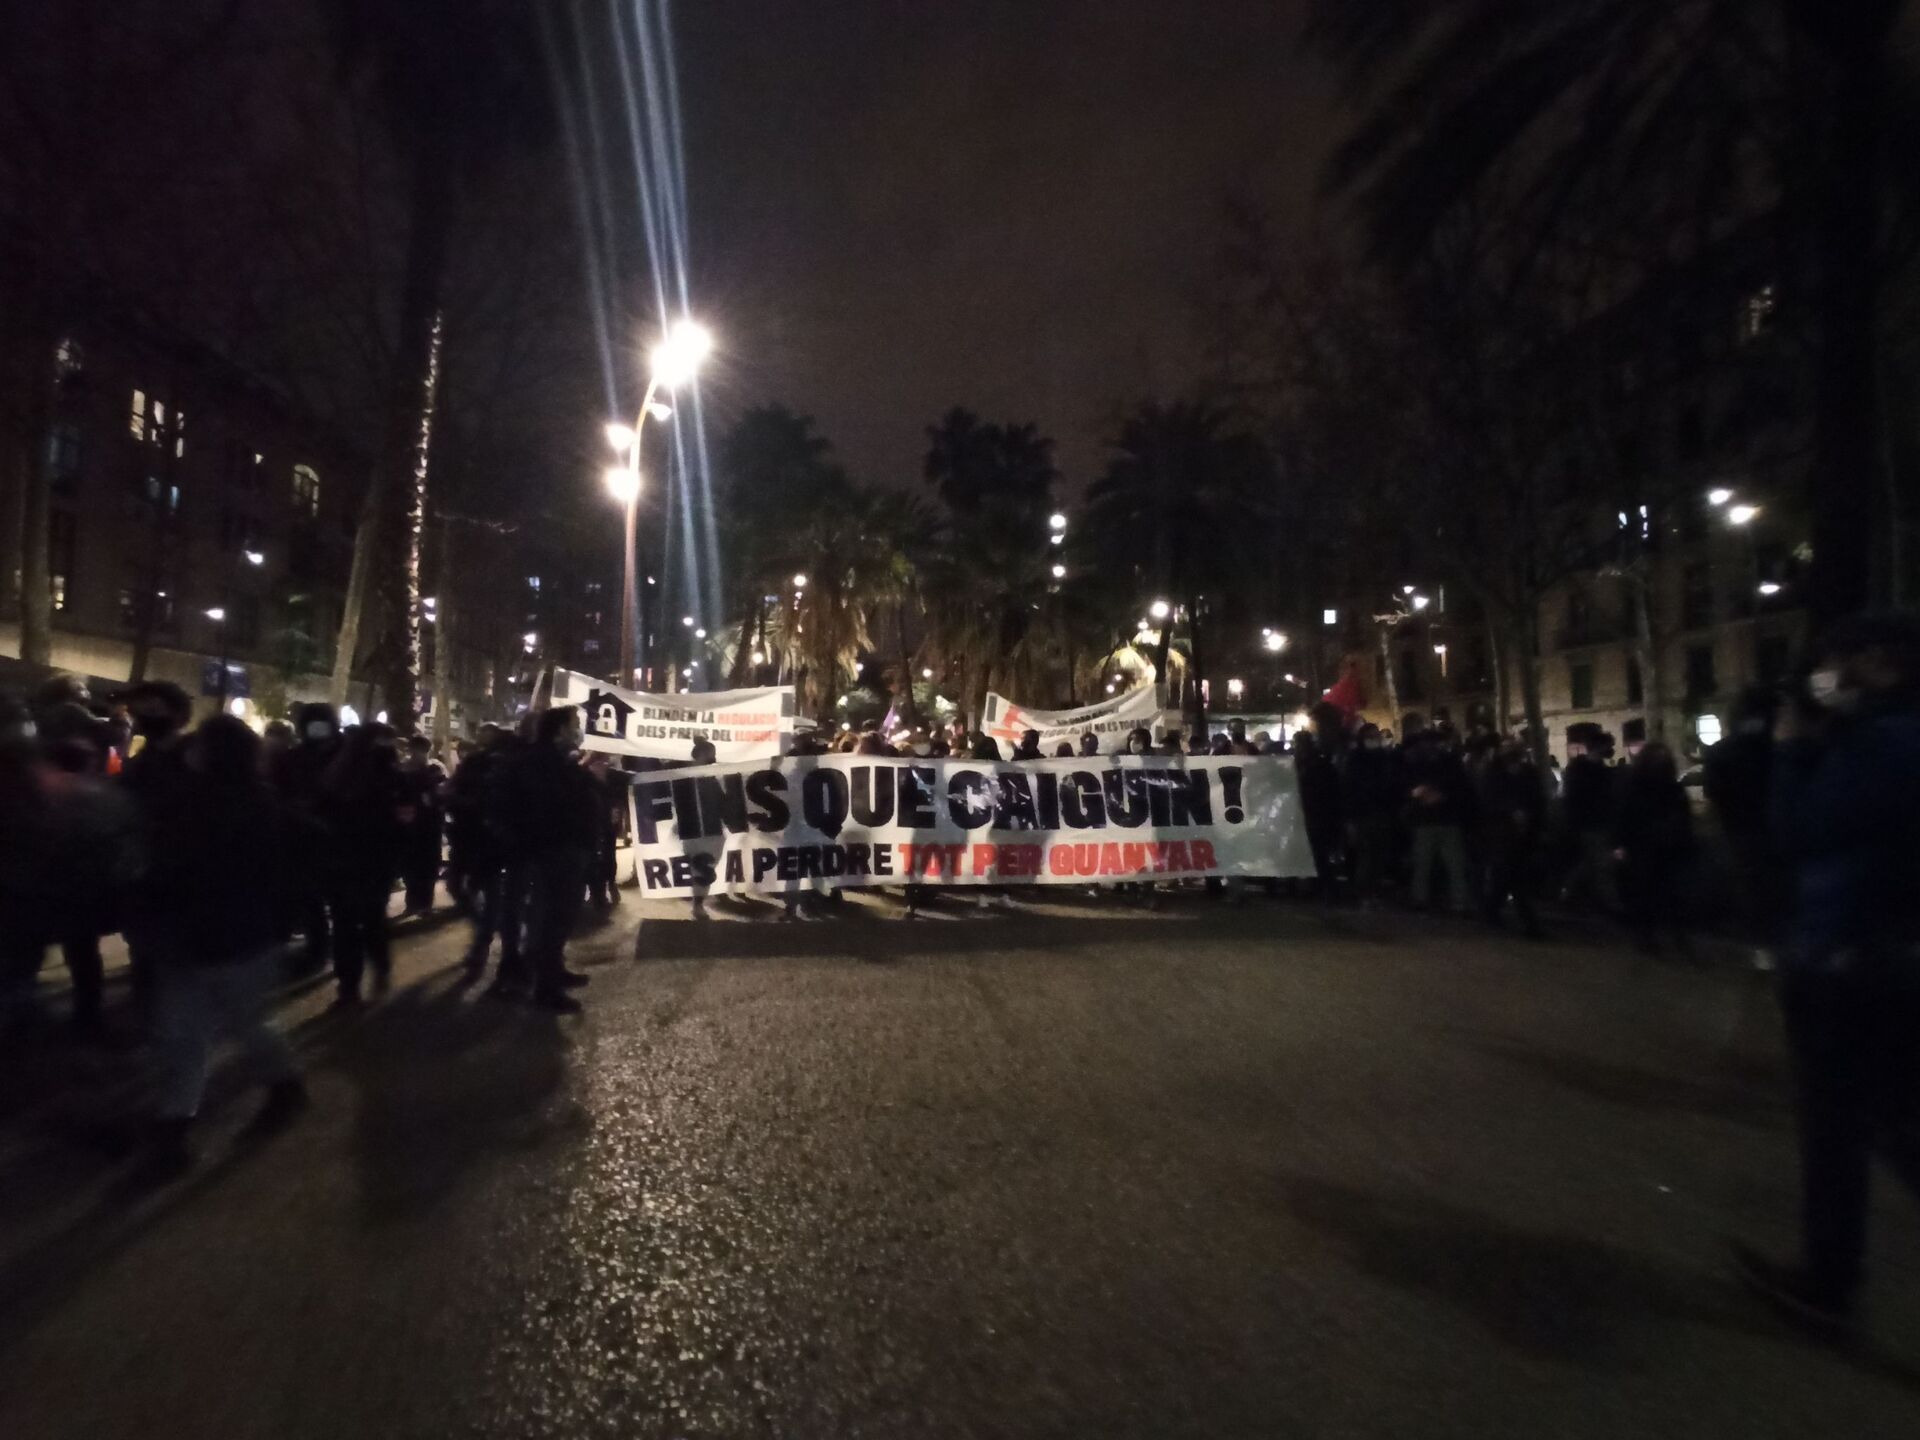 Protesti u Barseloni prerasli u nemire, najmanje desetoro privedenih /video, foto/ - Sputnik Srbija, 1920, 27.02.2021